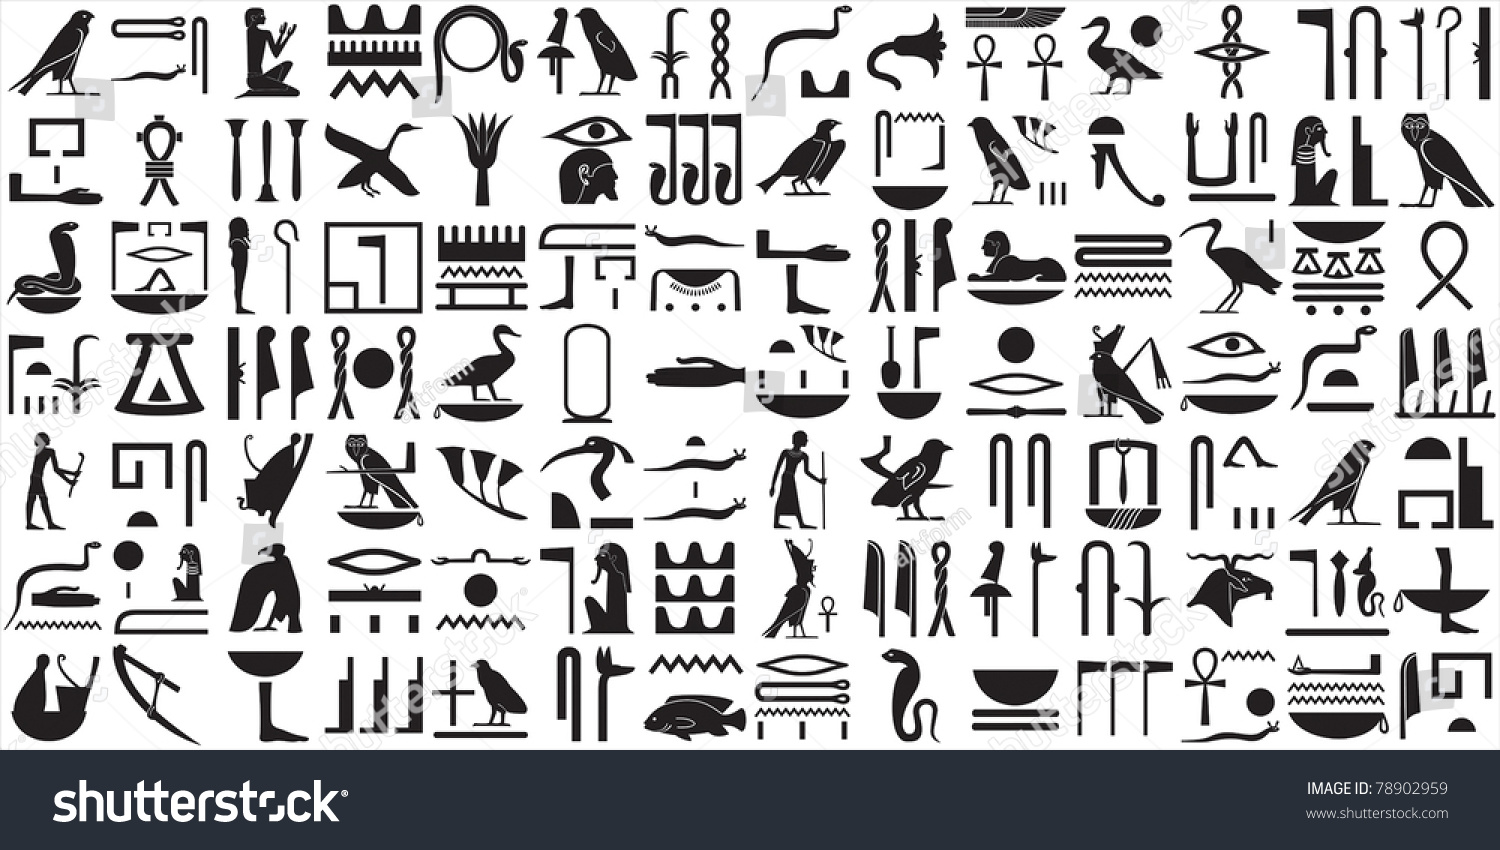 Нил египетскими иероглифами